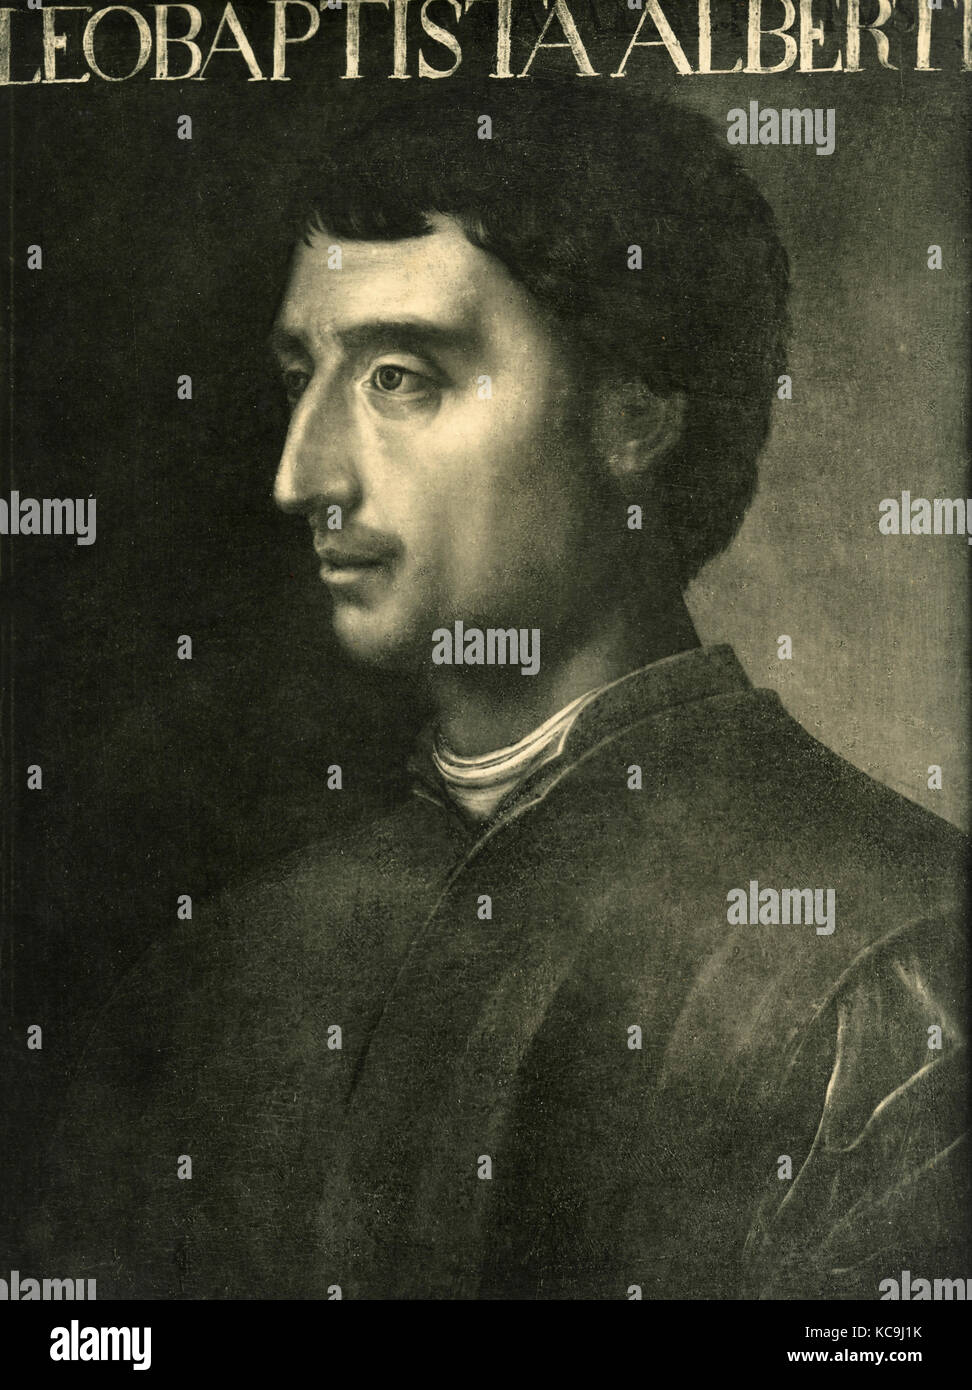 Leon Battista Alberti, portrait Stock Photo: 162480911 - Alamy